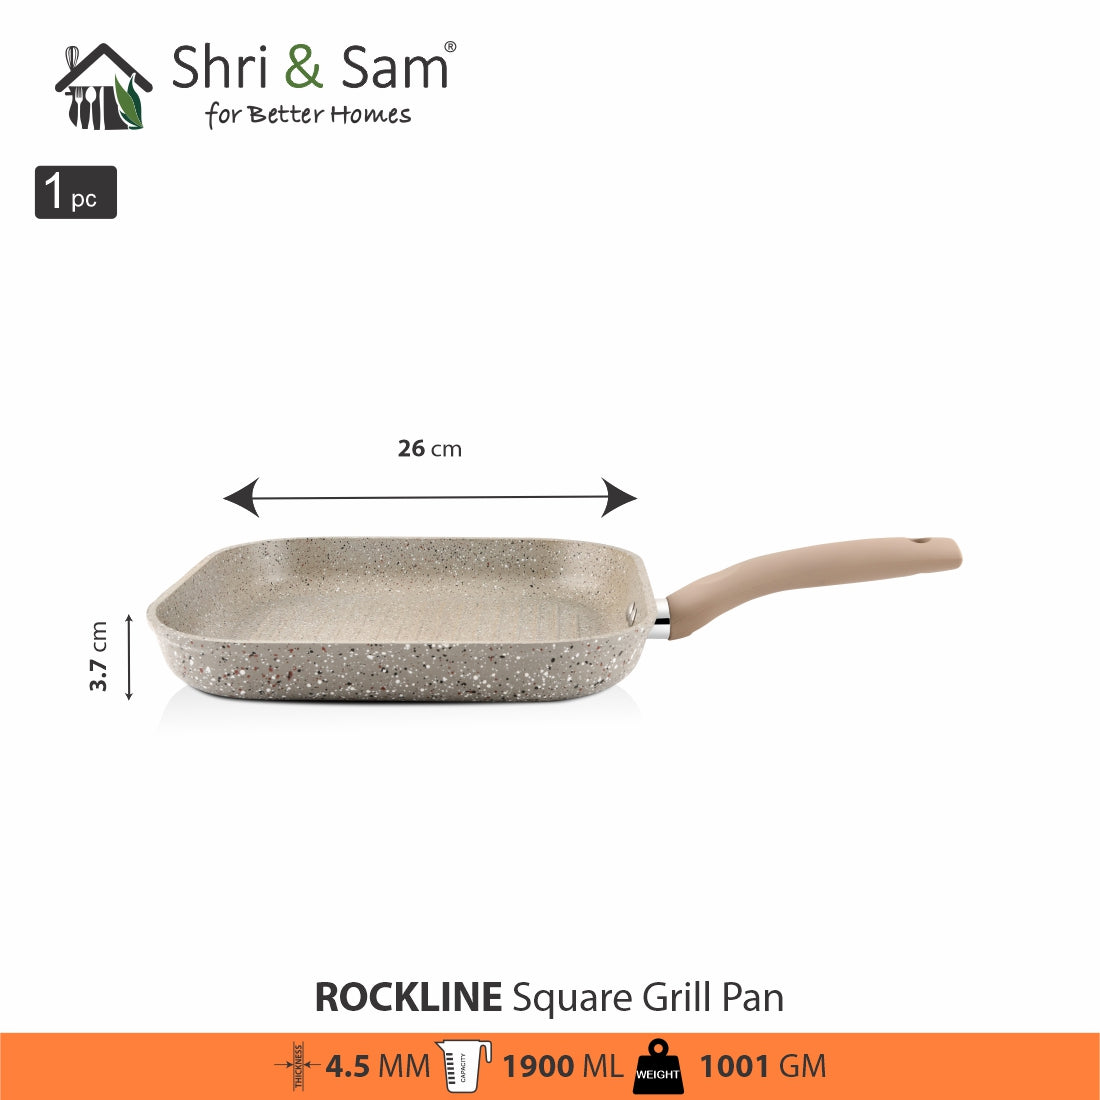 Aluminium Non-Stick Square Grill Pan Rockline